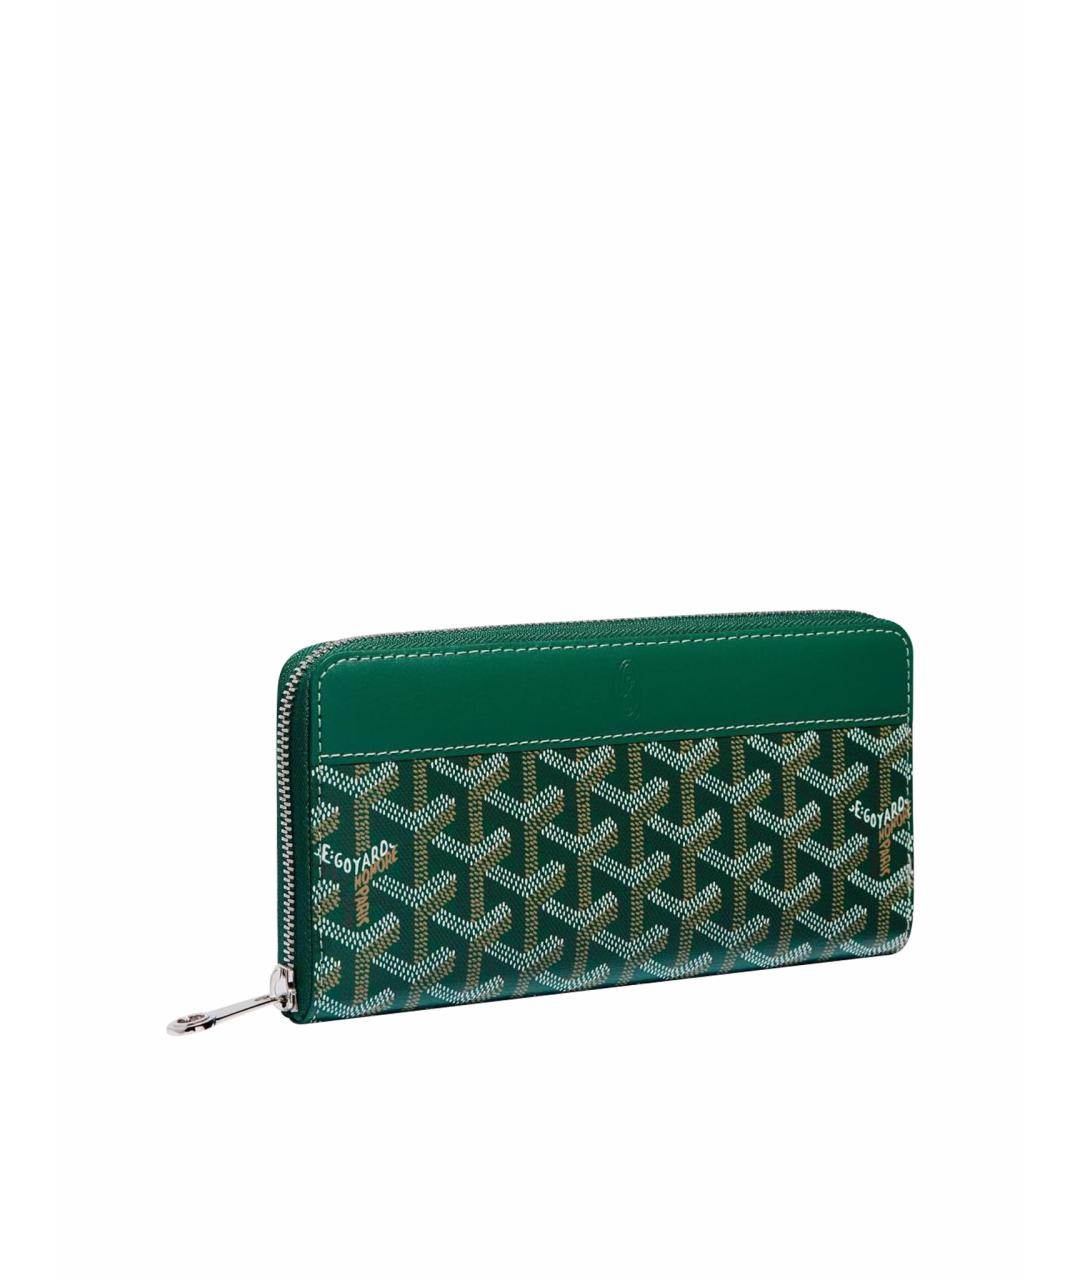 GOYARD Зеленый кожаный кошелек, фото 1